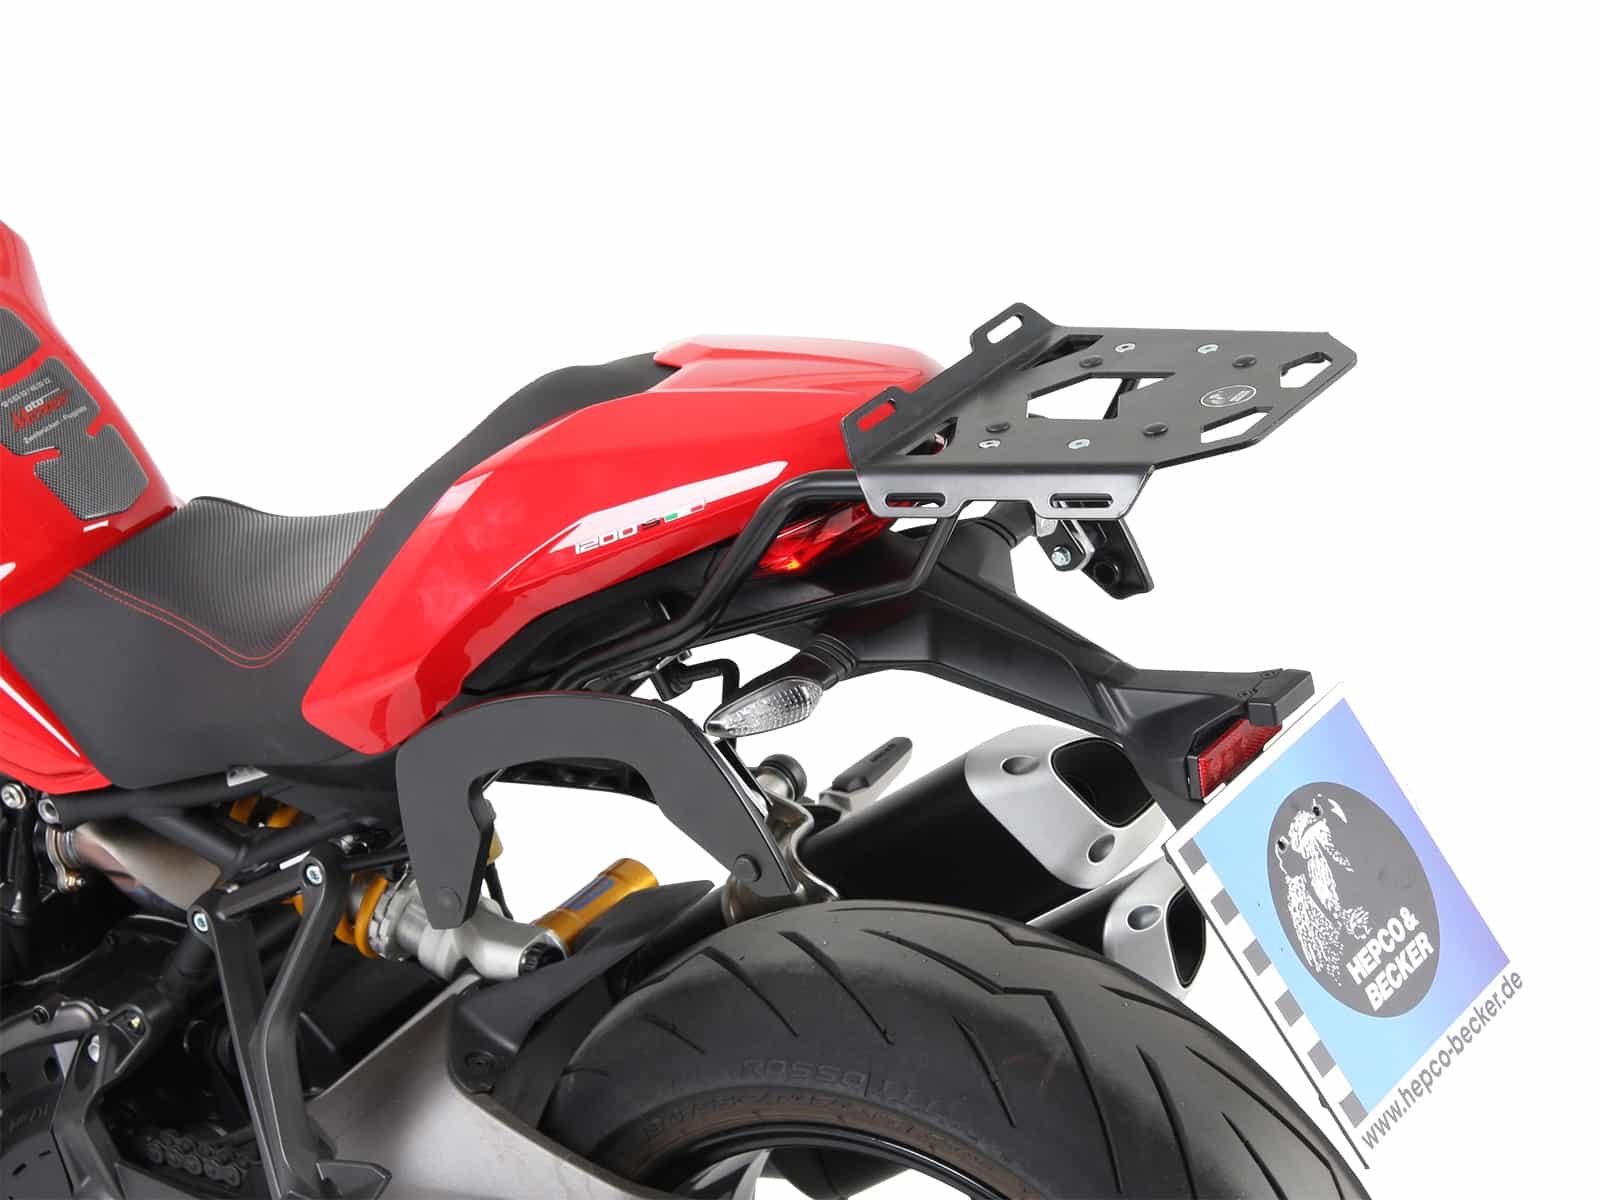 C-Bow sidecarrier black for Ducati Monster 1200 S (2017-)